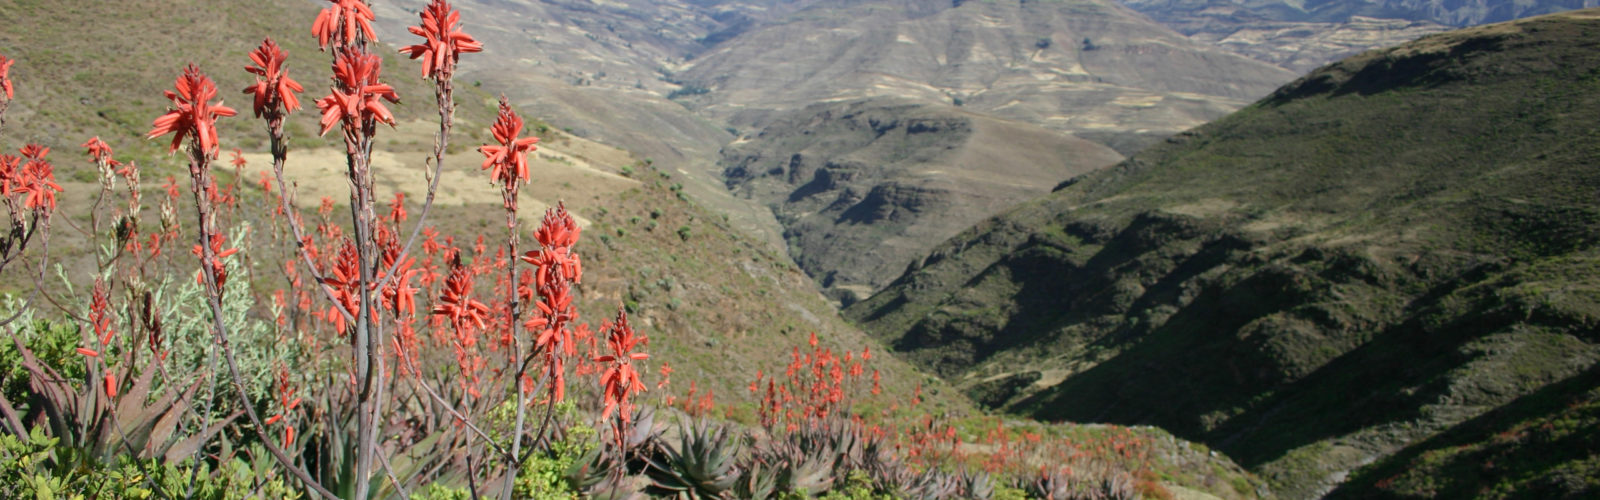 simien-mountains-ethiopia-flora